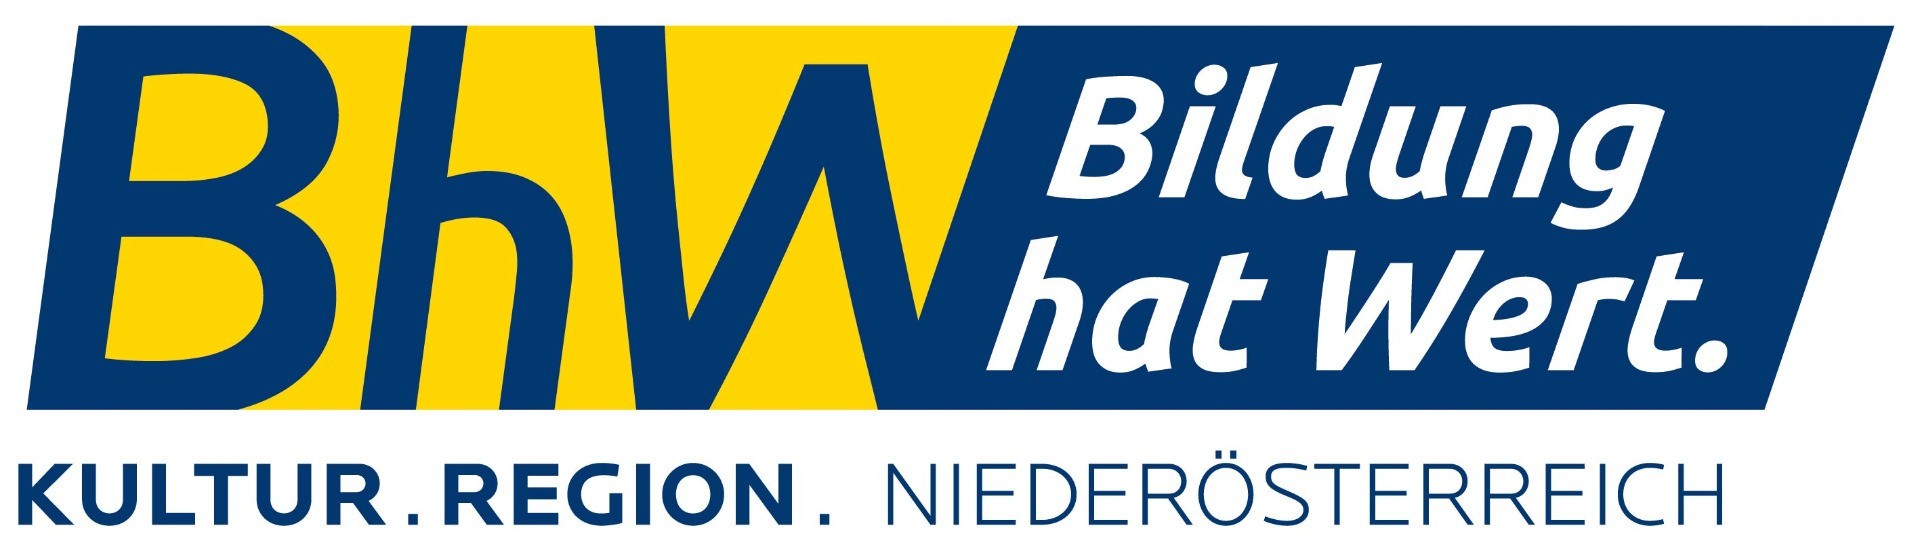 BhW_Logo_2019_RGB.jpg